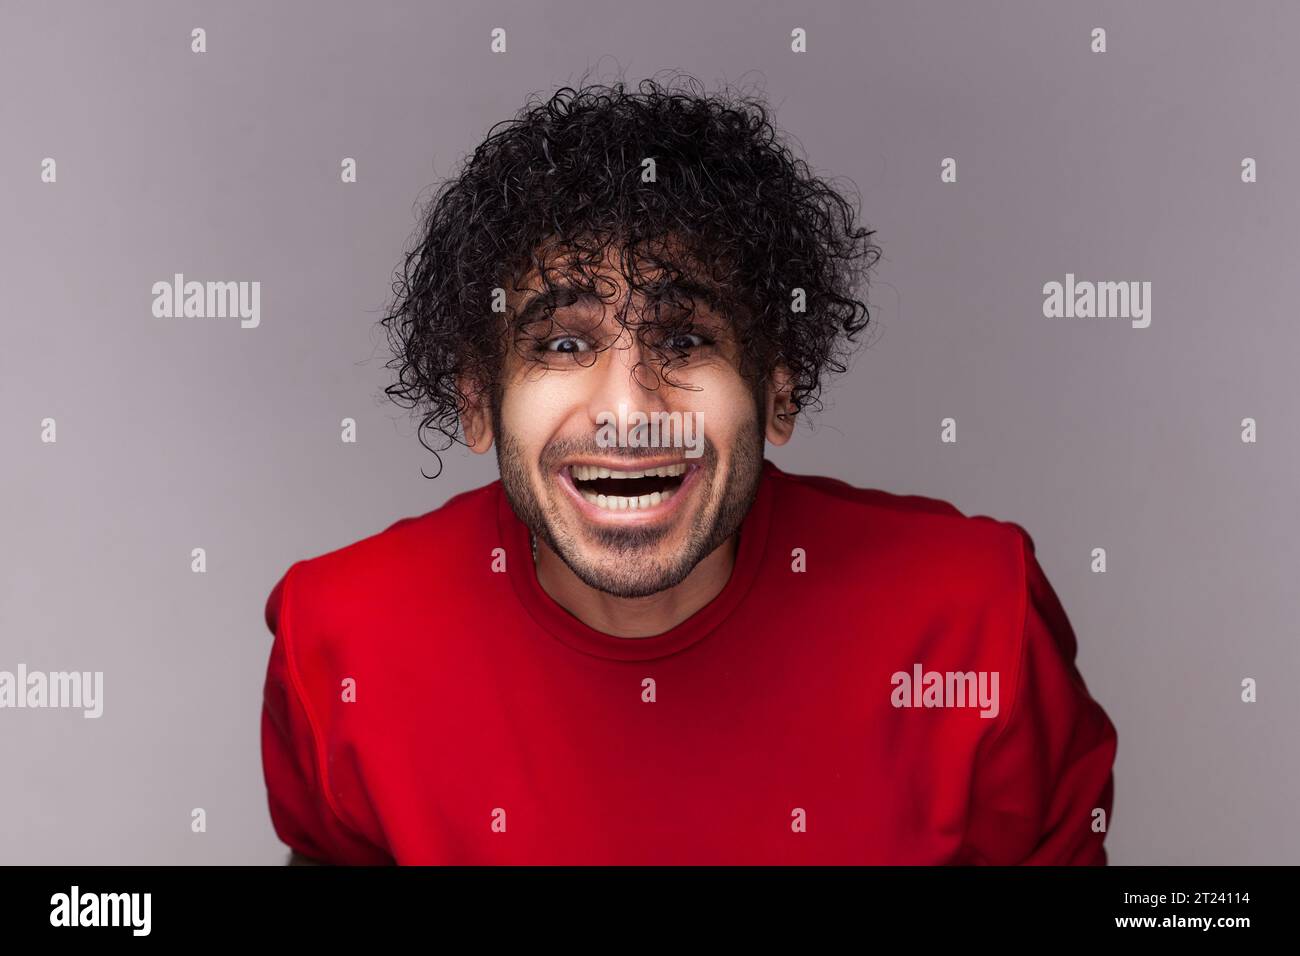 Porträt eines glücklichen, positiven bärtigen Mannes mit lockigen Haaren, der in die Kamera blickt und lacht, seine lustige Frisur sieht, mit rotem Pullover. Innenstudio isoliert auf grauem Hintergrund. Stockfoto